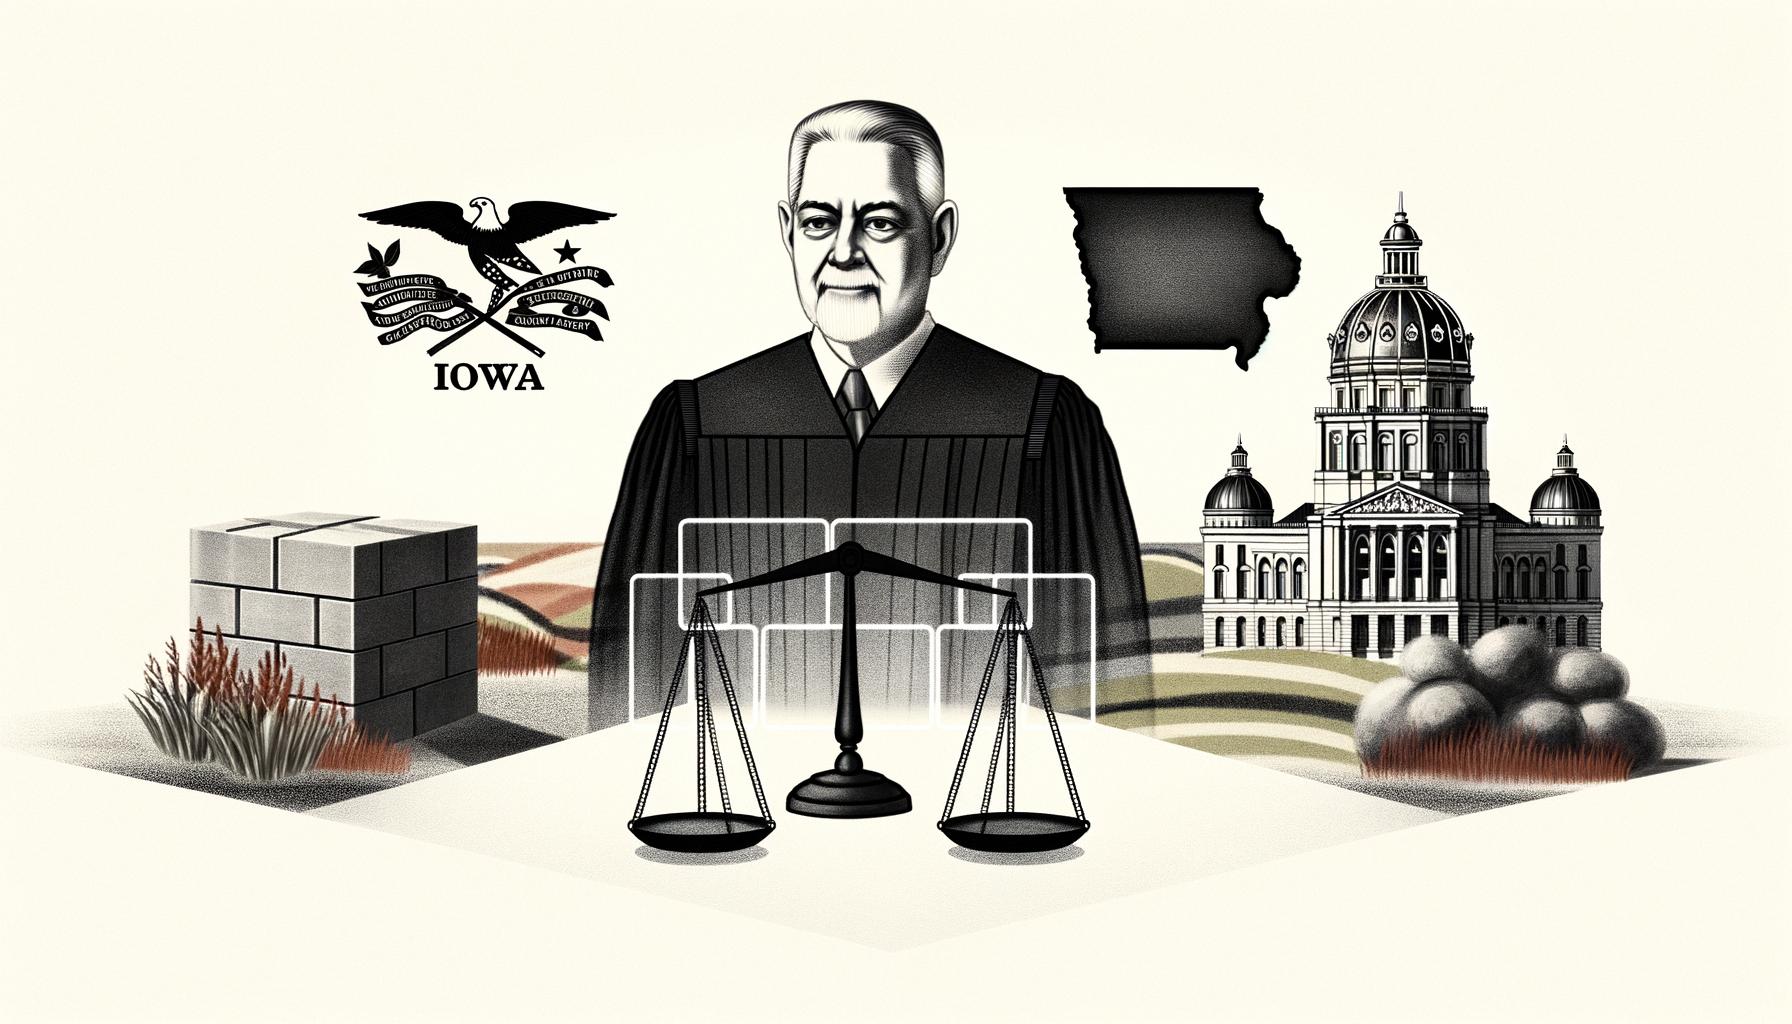 Federal judge blocks Iowa's immigration law